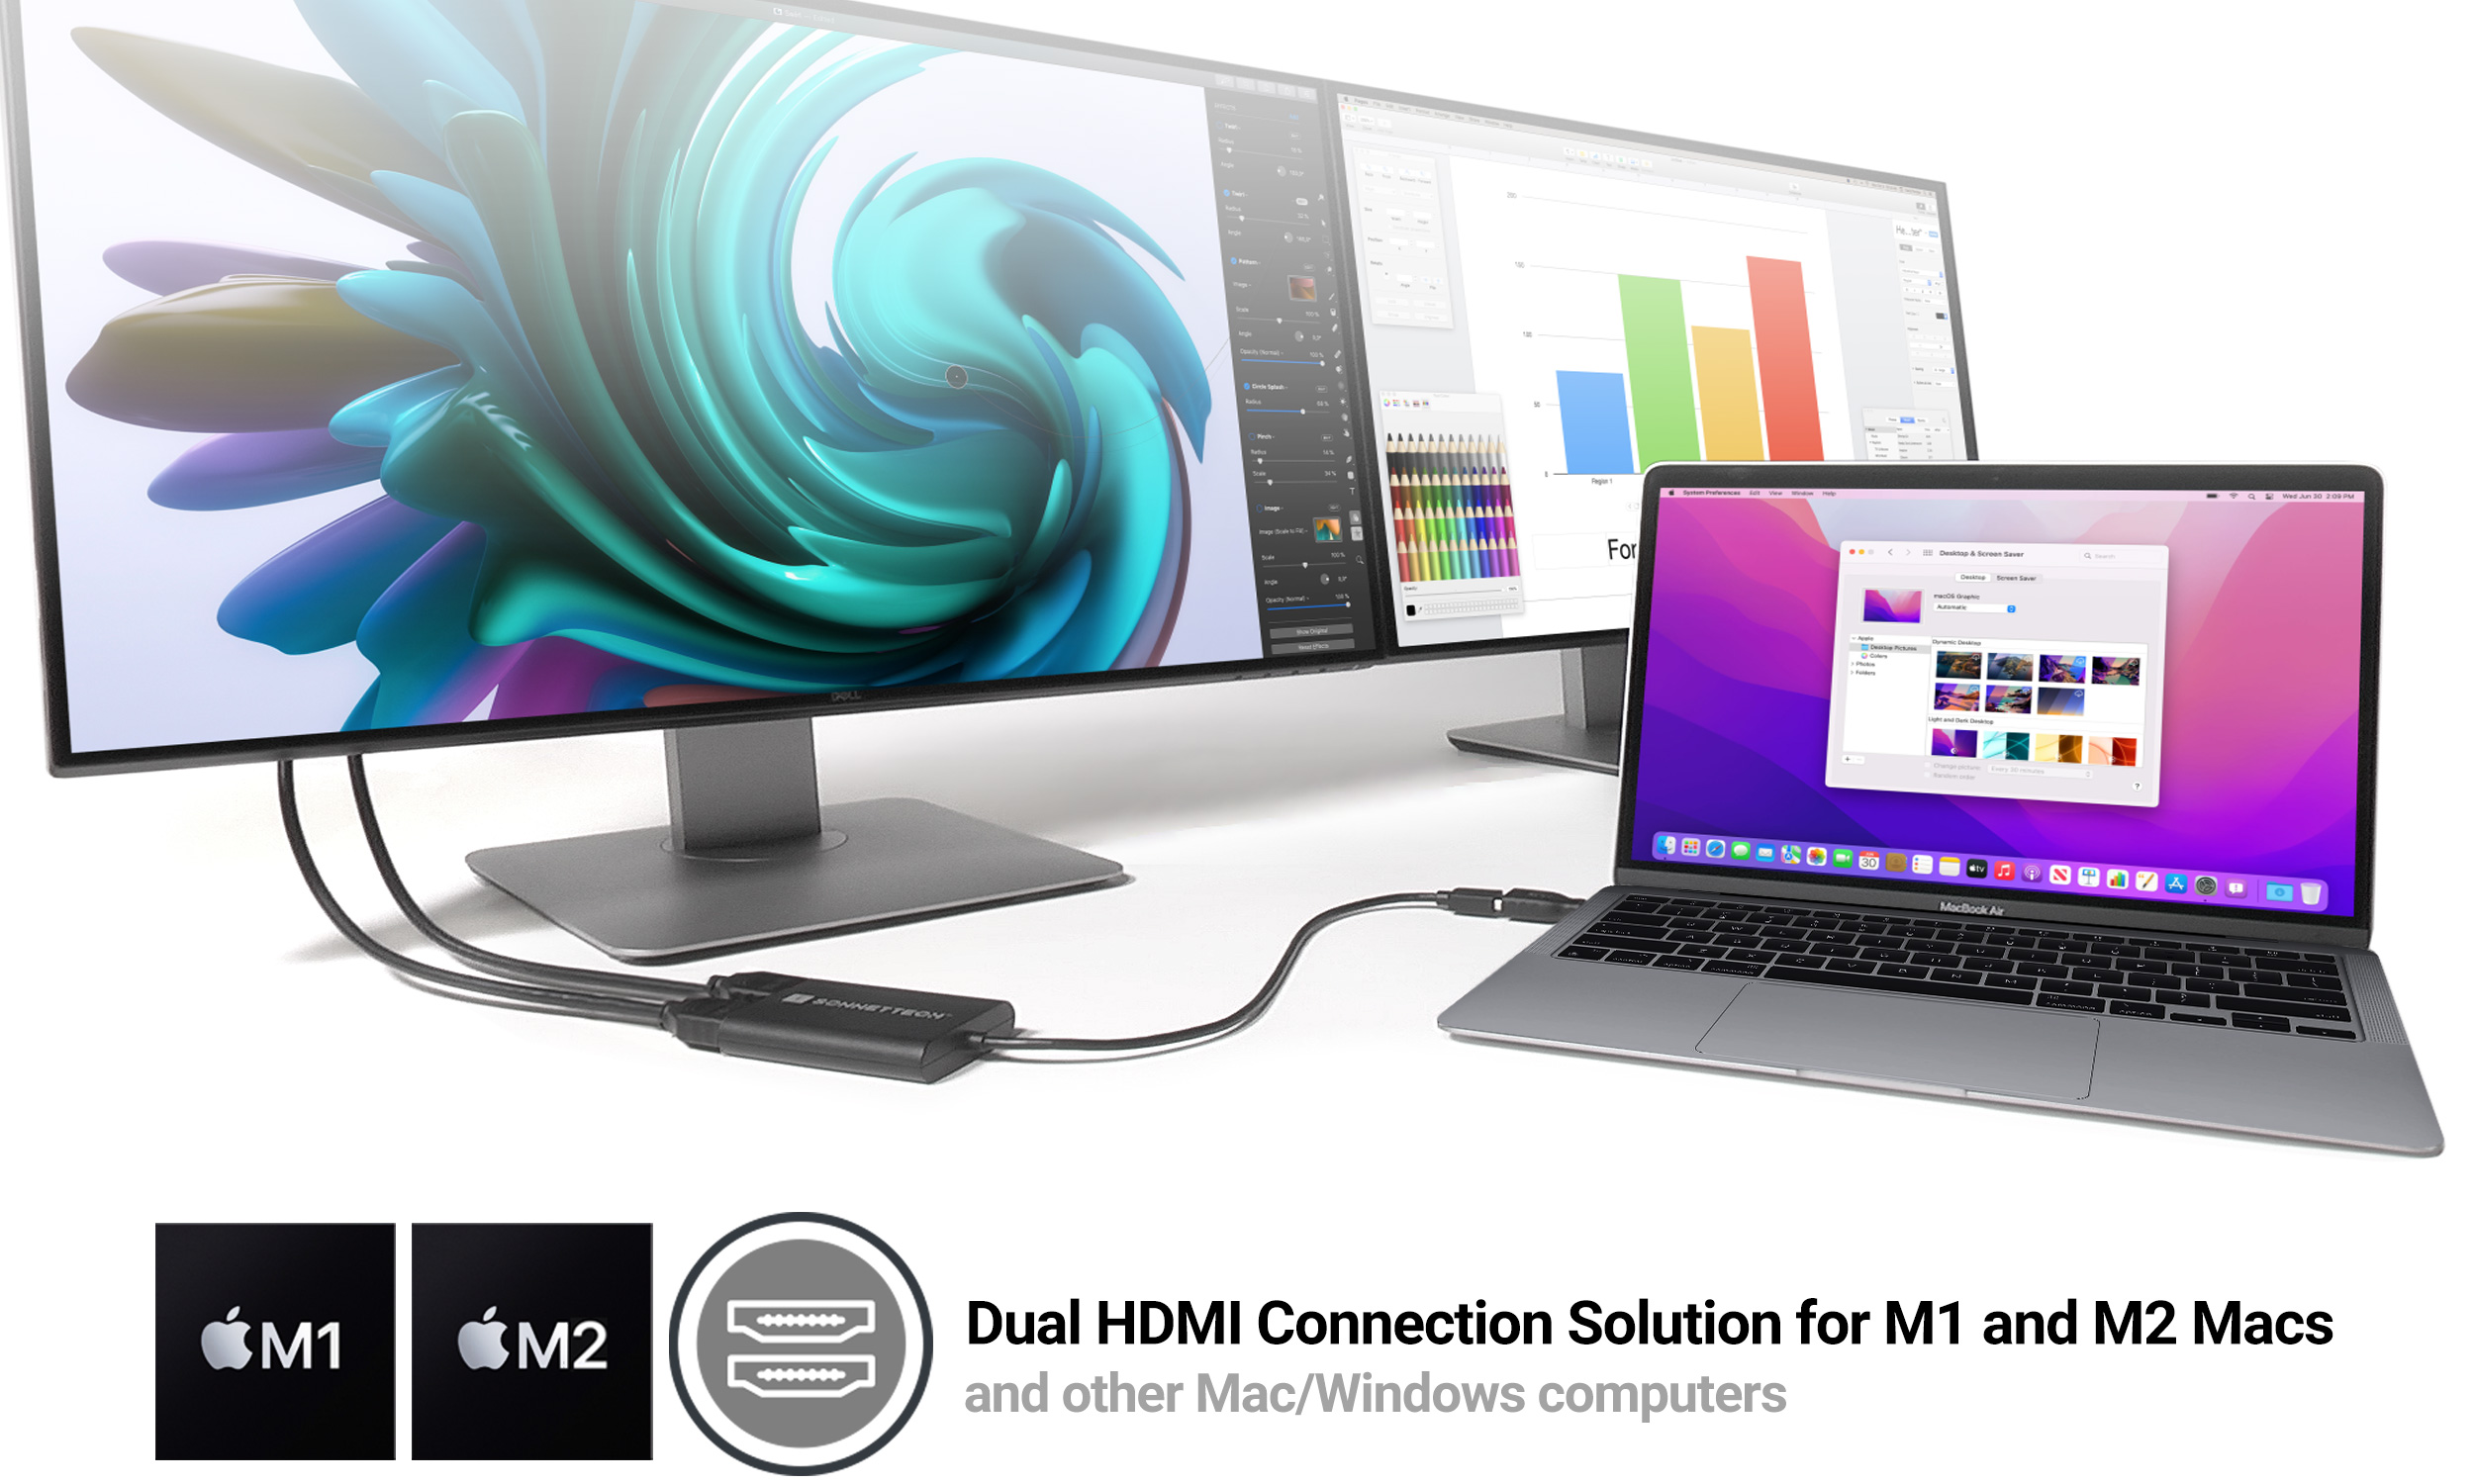 Gendanne skridtlængde Medic DisplayLink Dual HDMI Adapter for M1 and M2 Macs - SONNETTECH